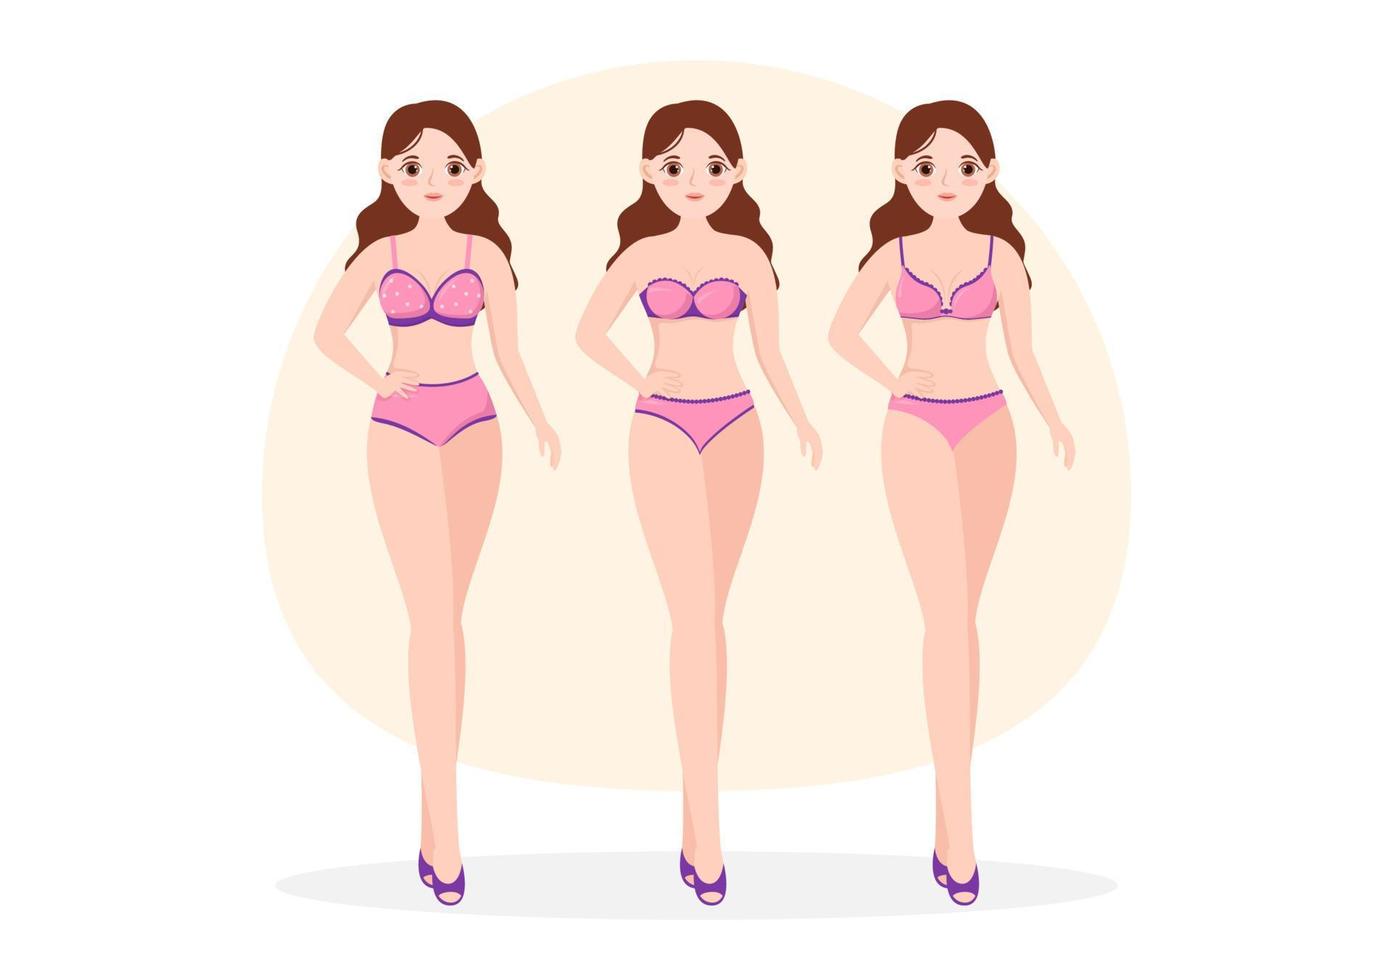 collection de lingerie femme élégante, soutien-gorge et sous-vêtements de couleur rose et violet sur illustration de modèles dessinés à la main dessin animé plat vecteur